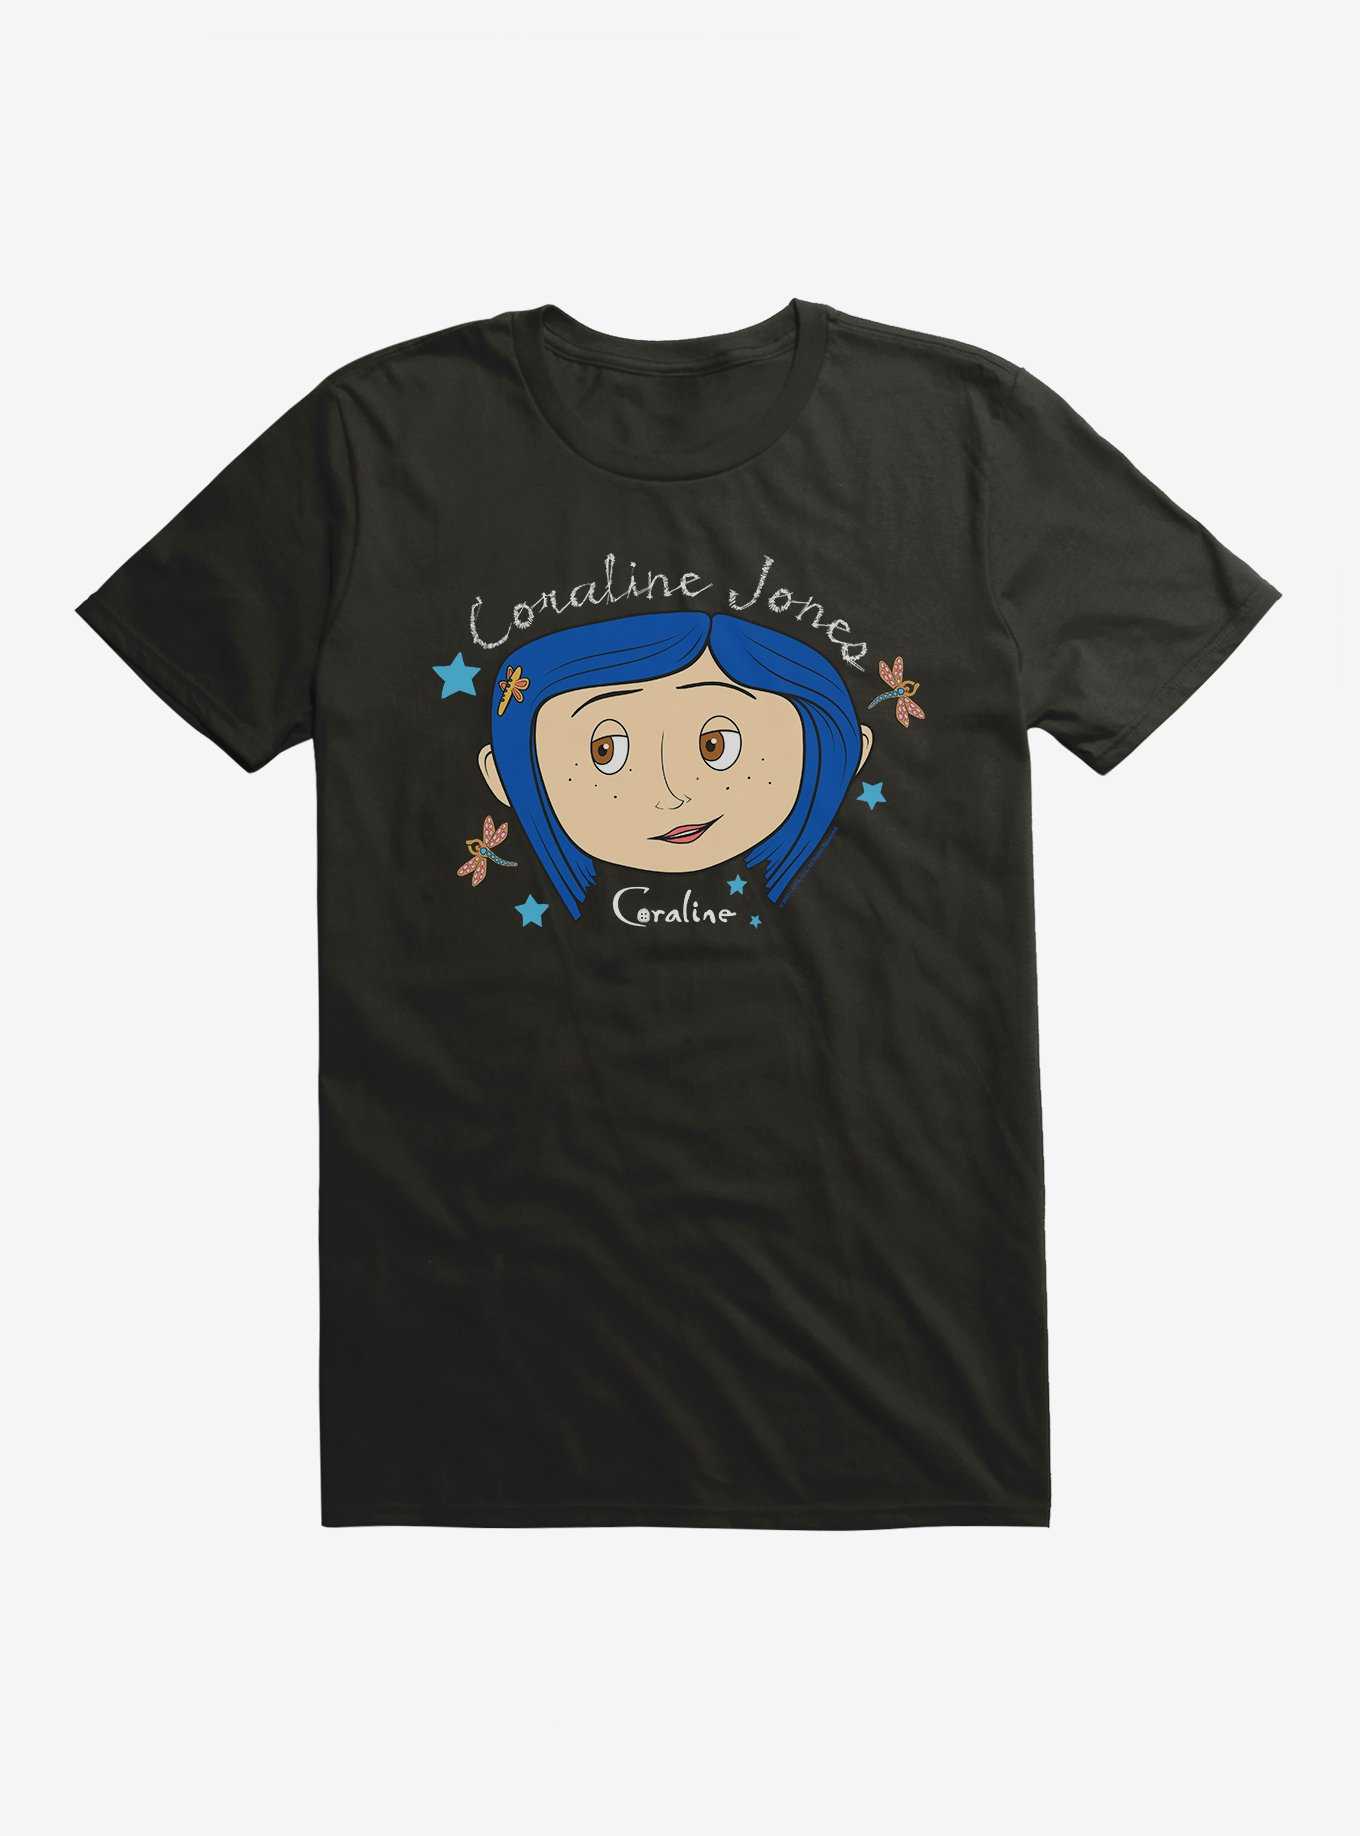 Coraline Coraline Jones T-Shirt, , hi-res